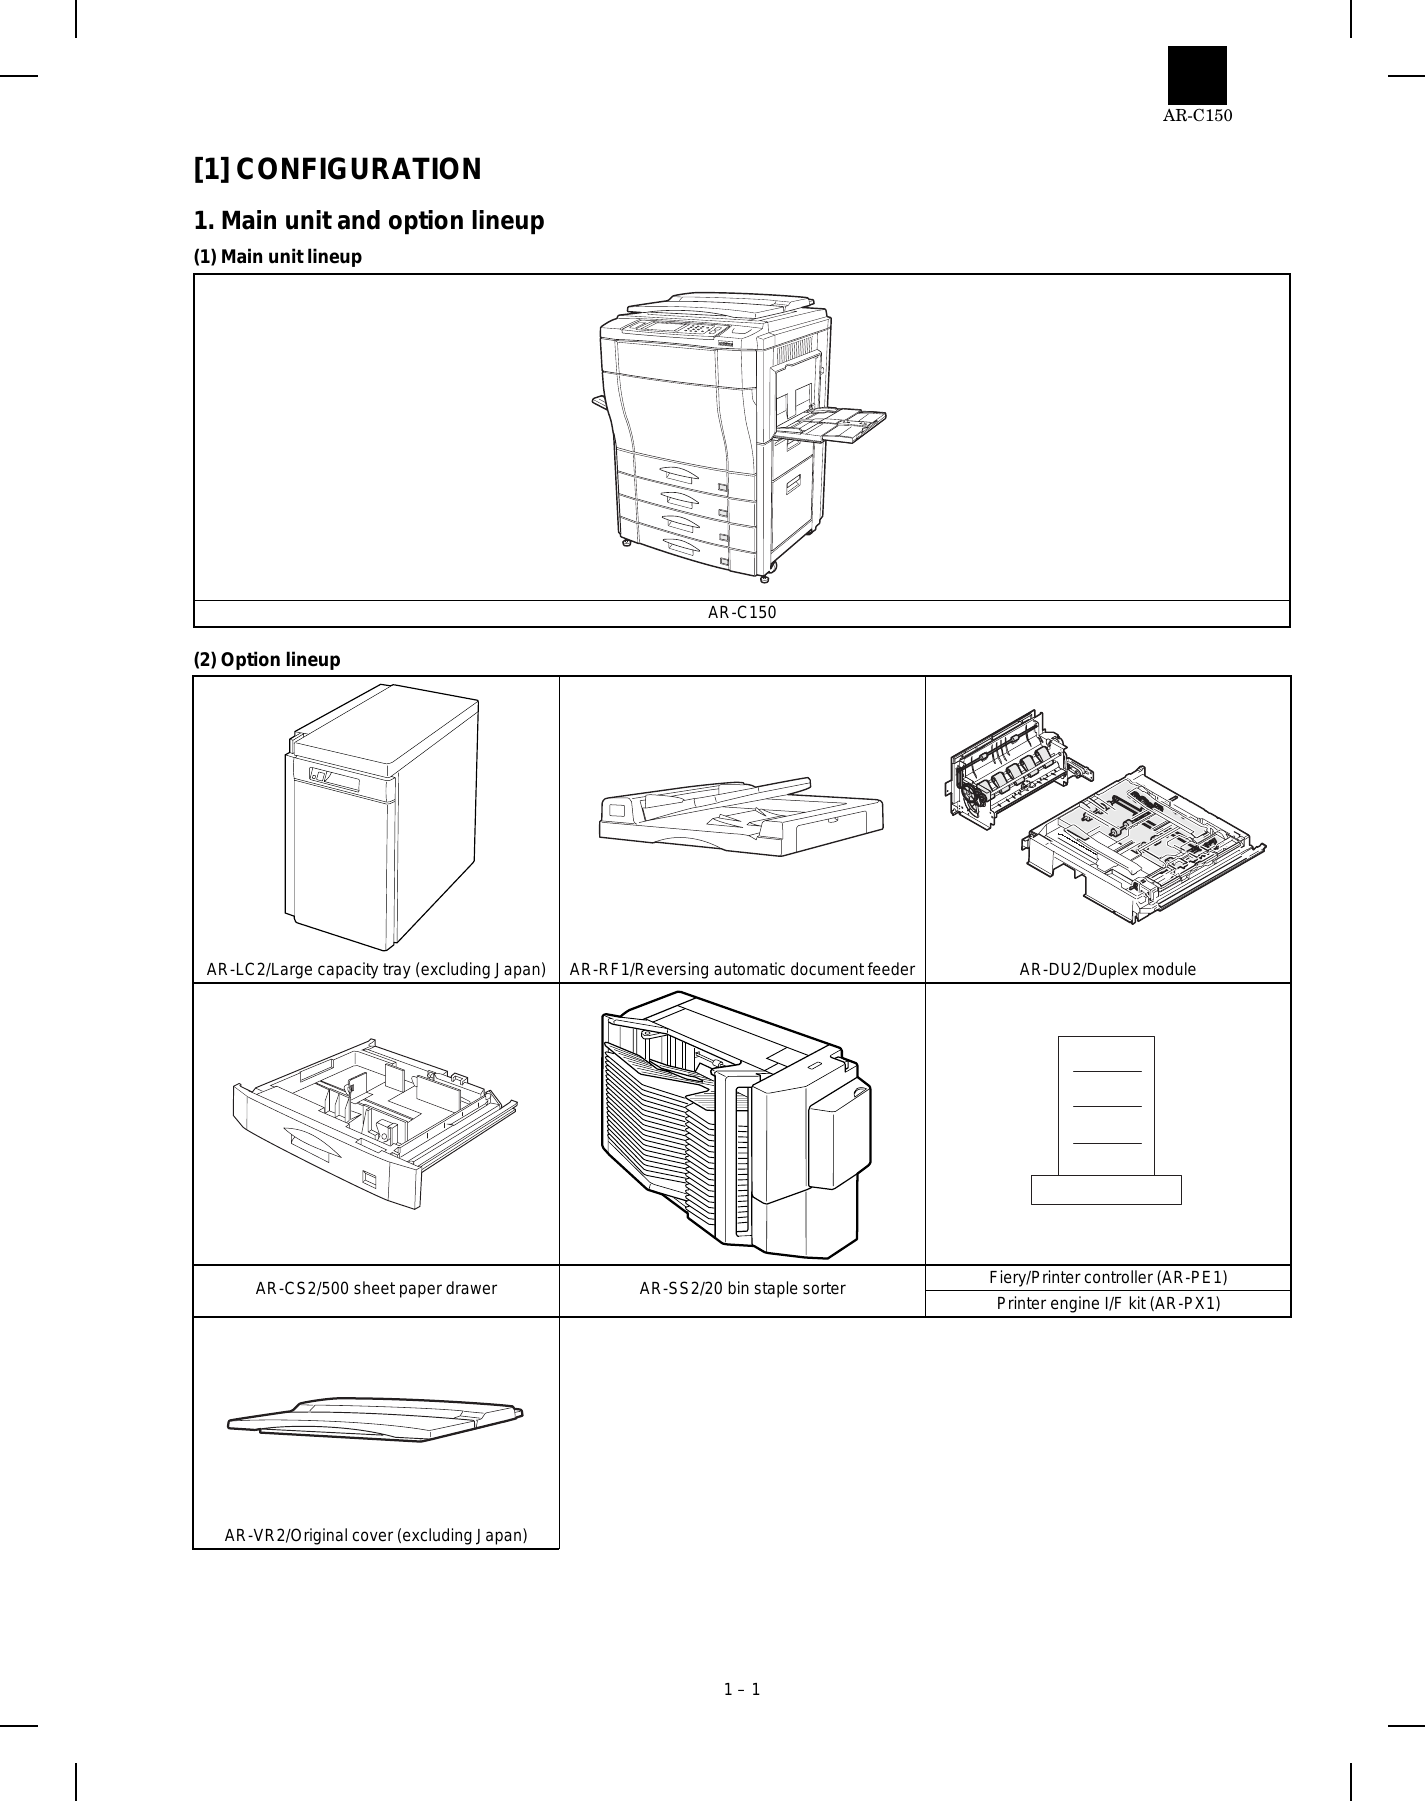 Sharp AR C150 Color copier service manual Preview image 4